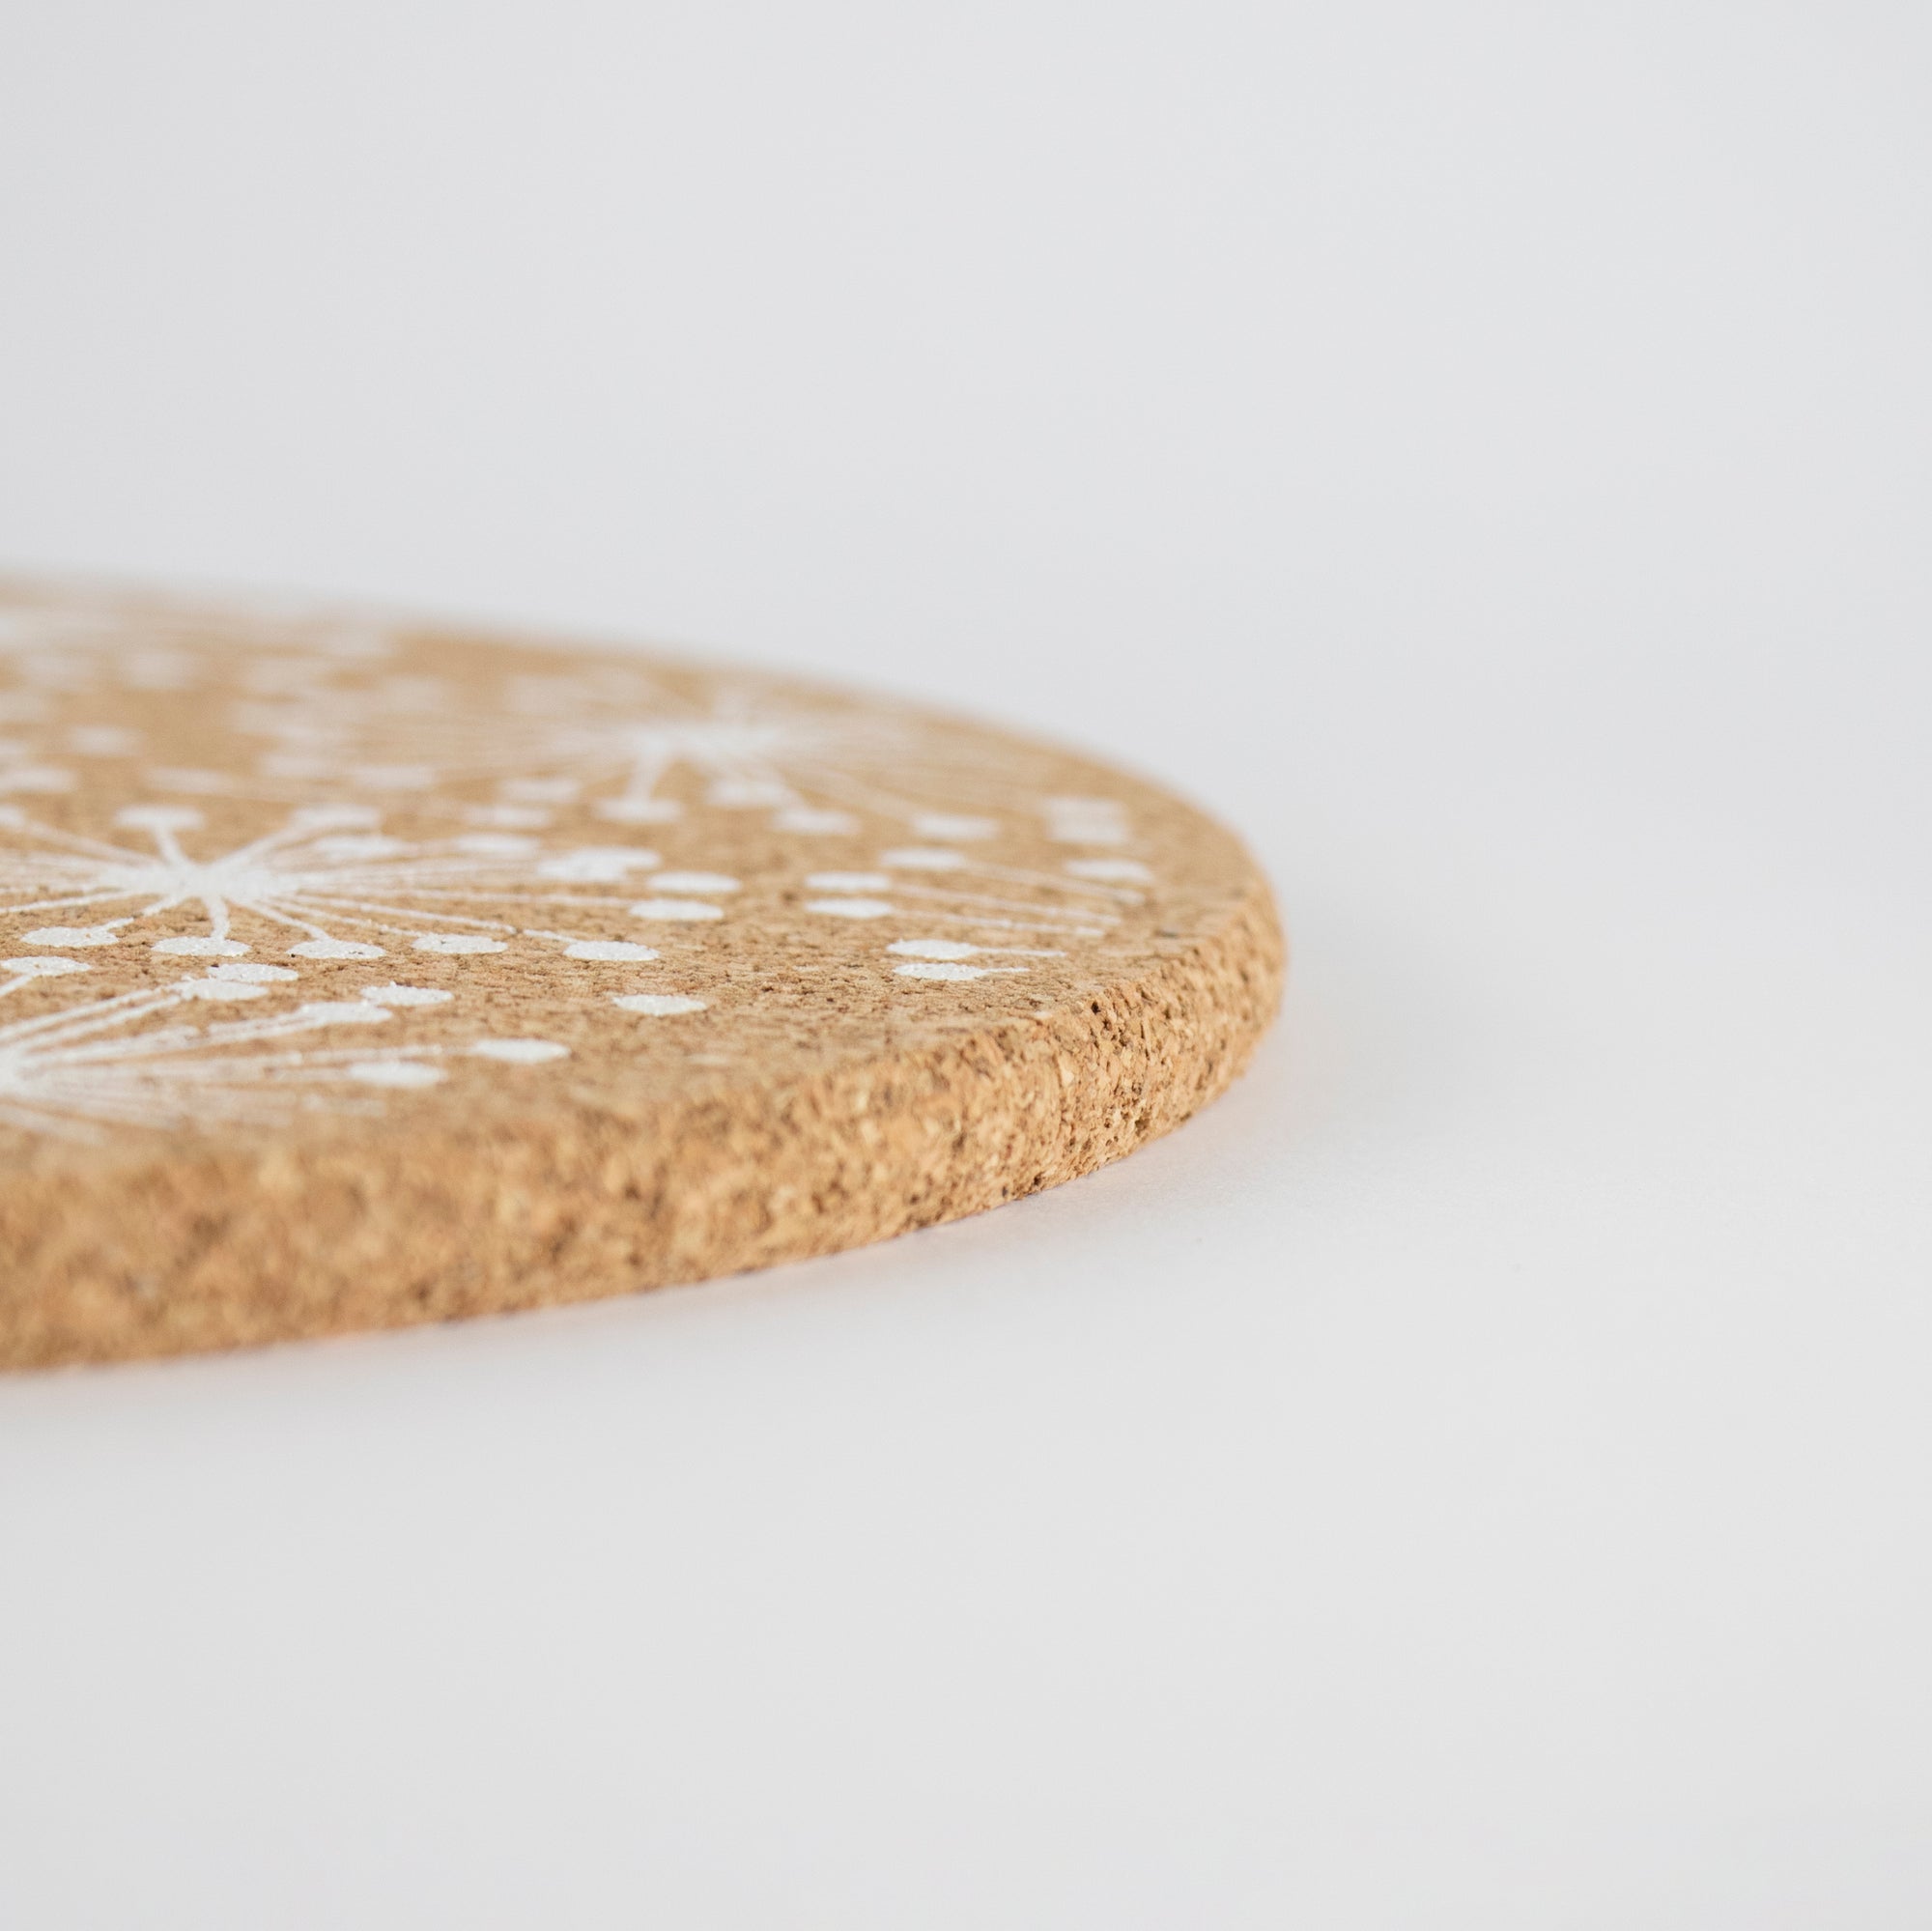 Eco friendly cork placemats + coasters. Dandelion design